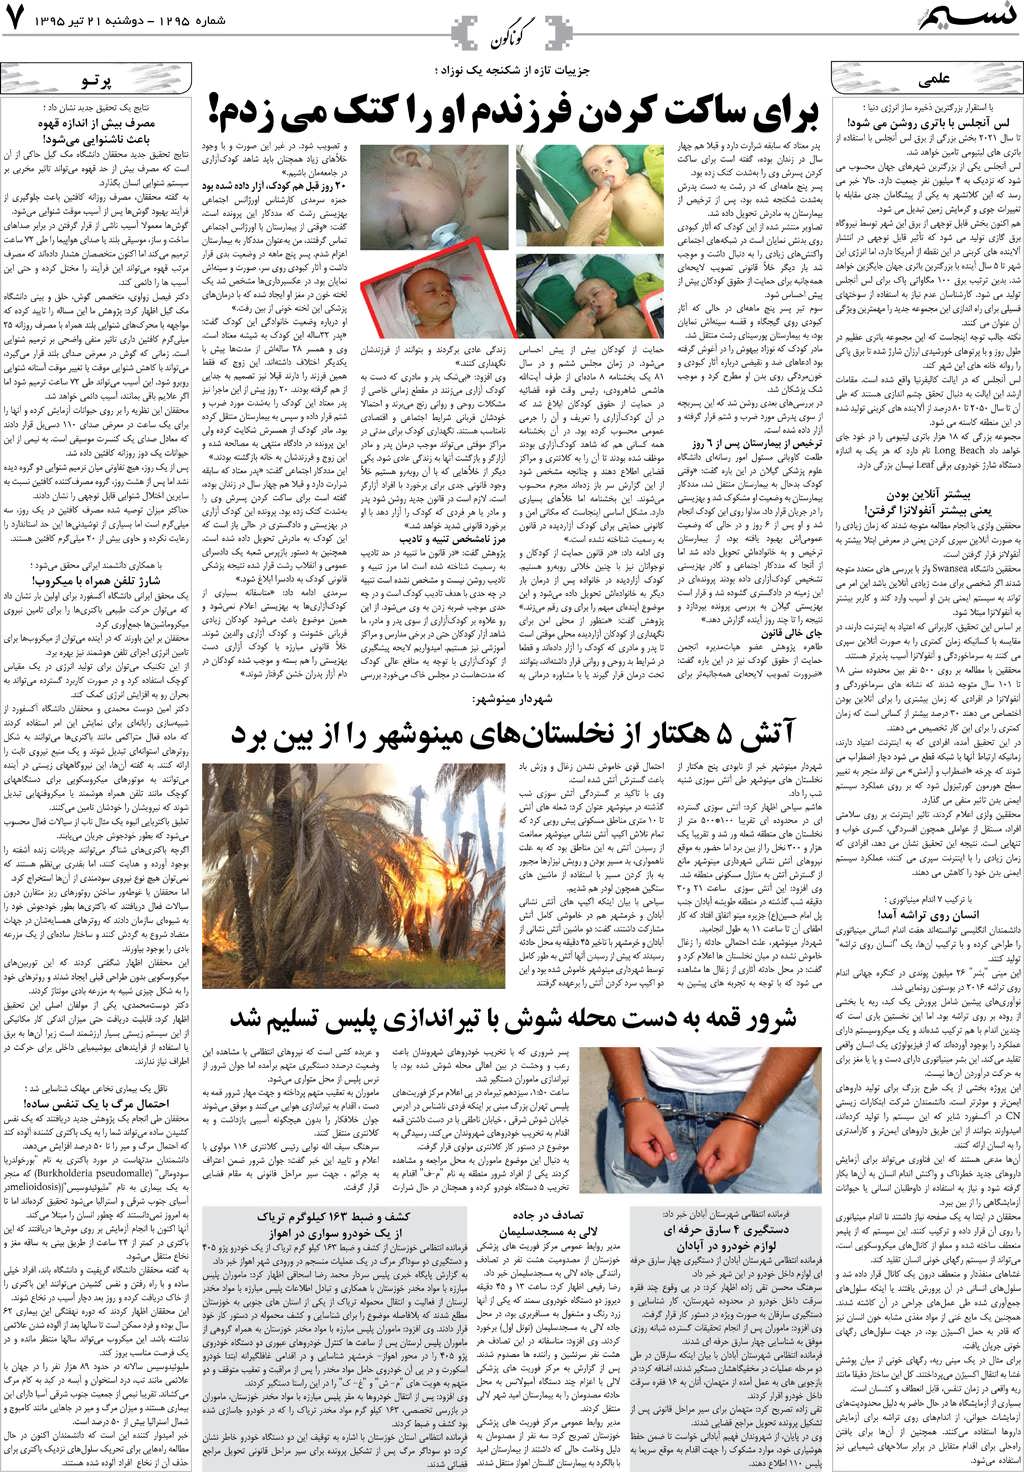 صفحه گوناگون روزنامه نسیم شماره 1295